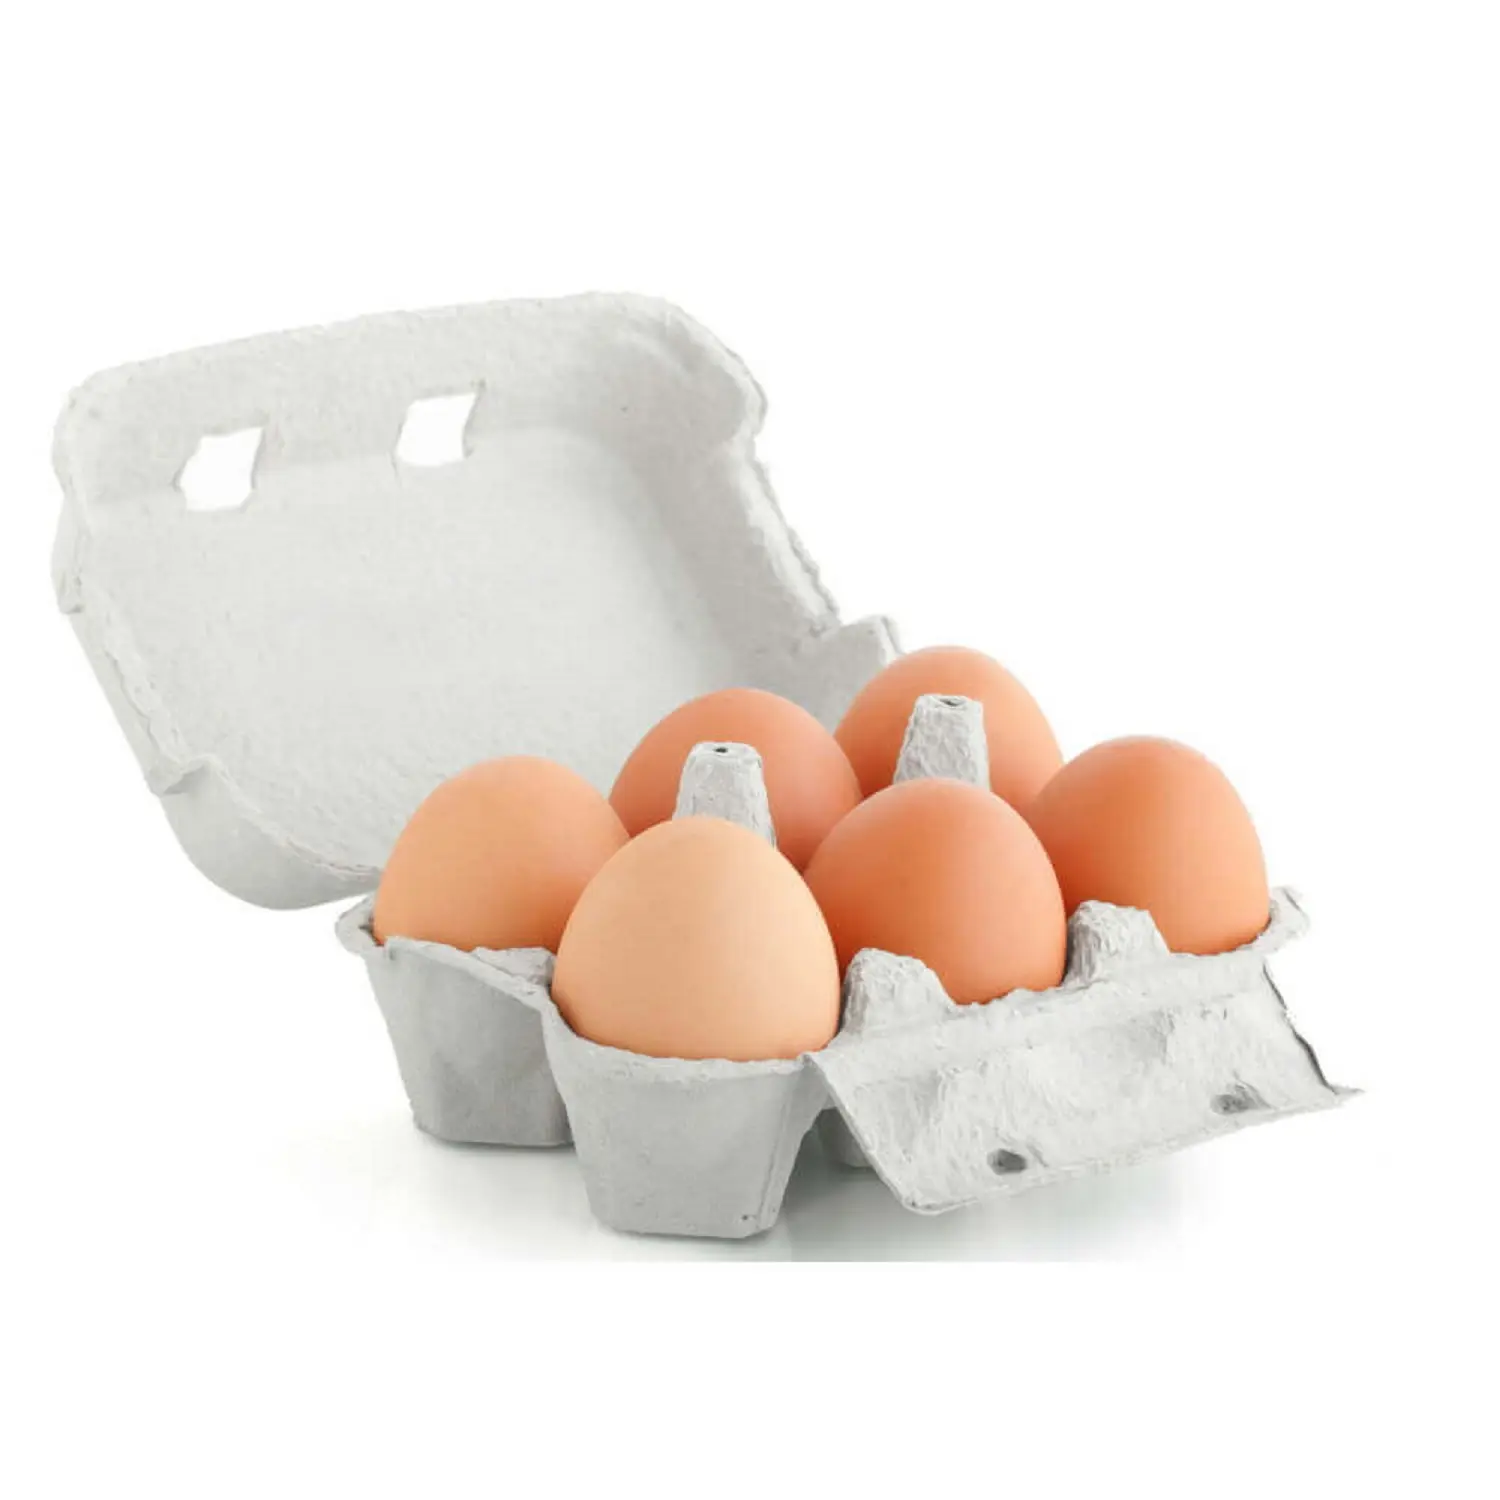 सर्वश्रेष्ठ ताजा ब्राउन टेबल चिकन अंडे सस्ते ताजा चिकन टेबल अंडे थोक भूरे रंग के अंडे में ताजा चिकन टेबल अंडे ताजा चिकन